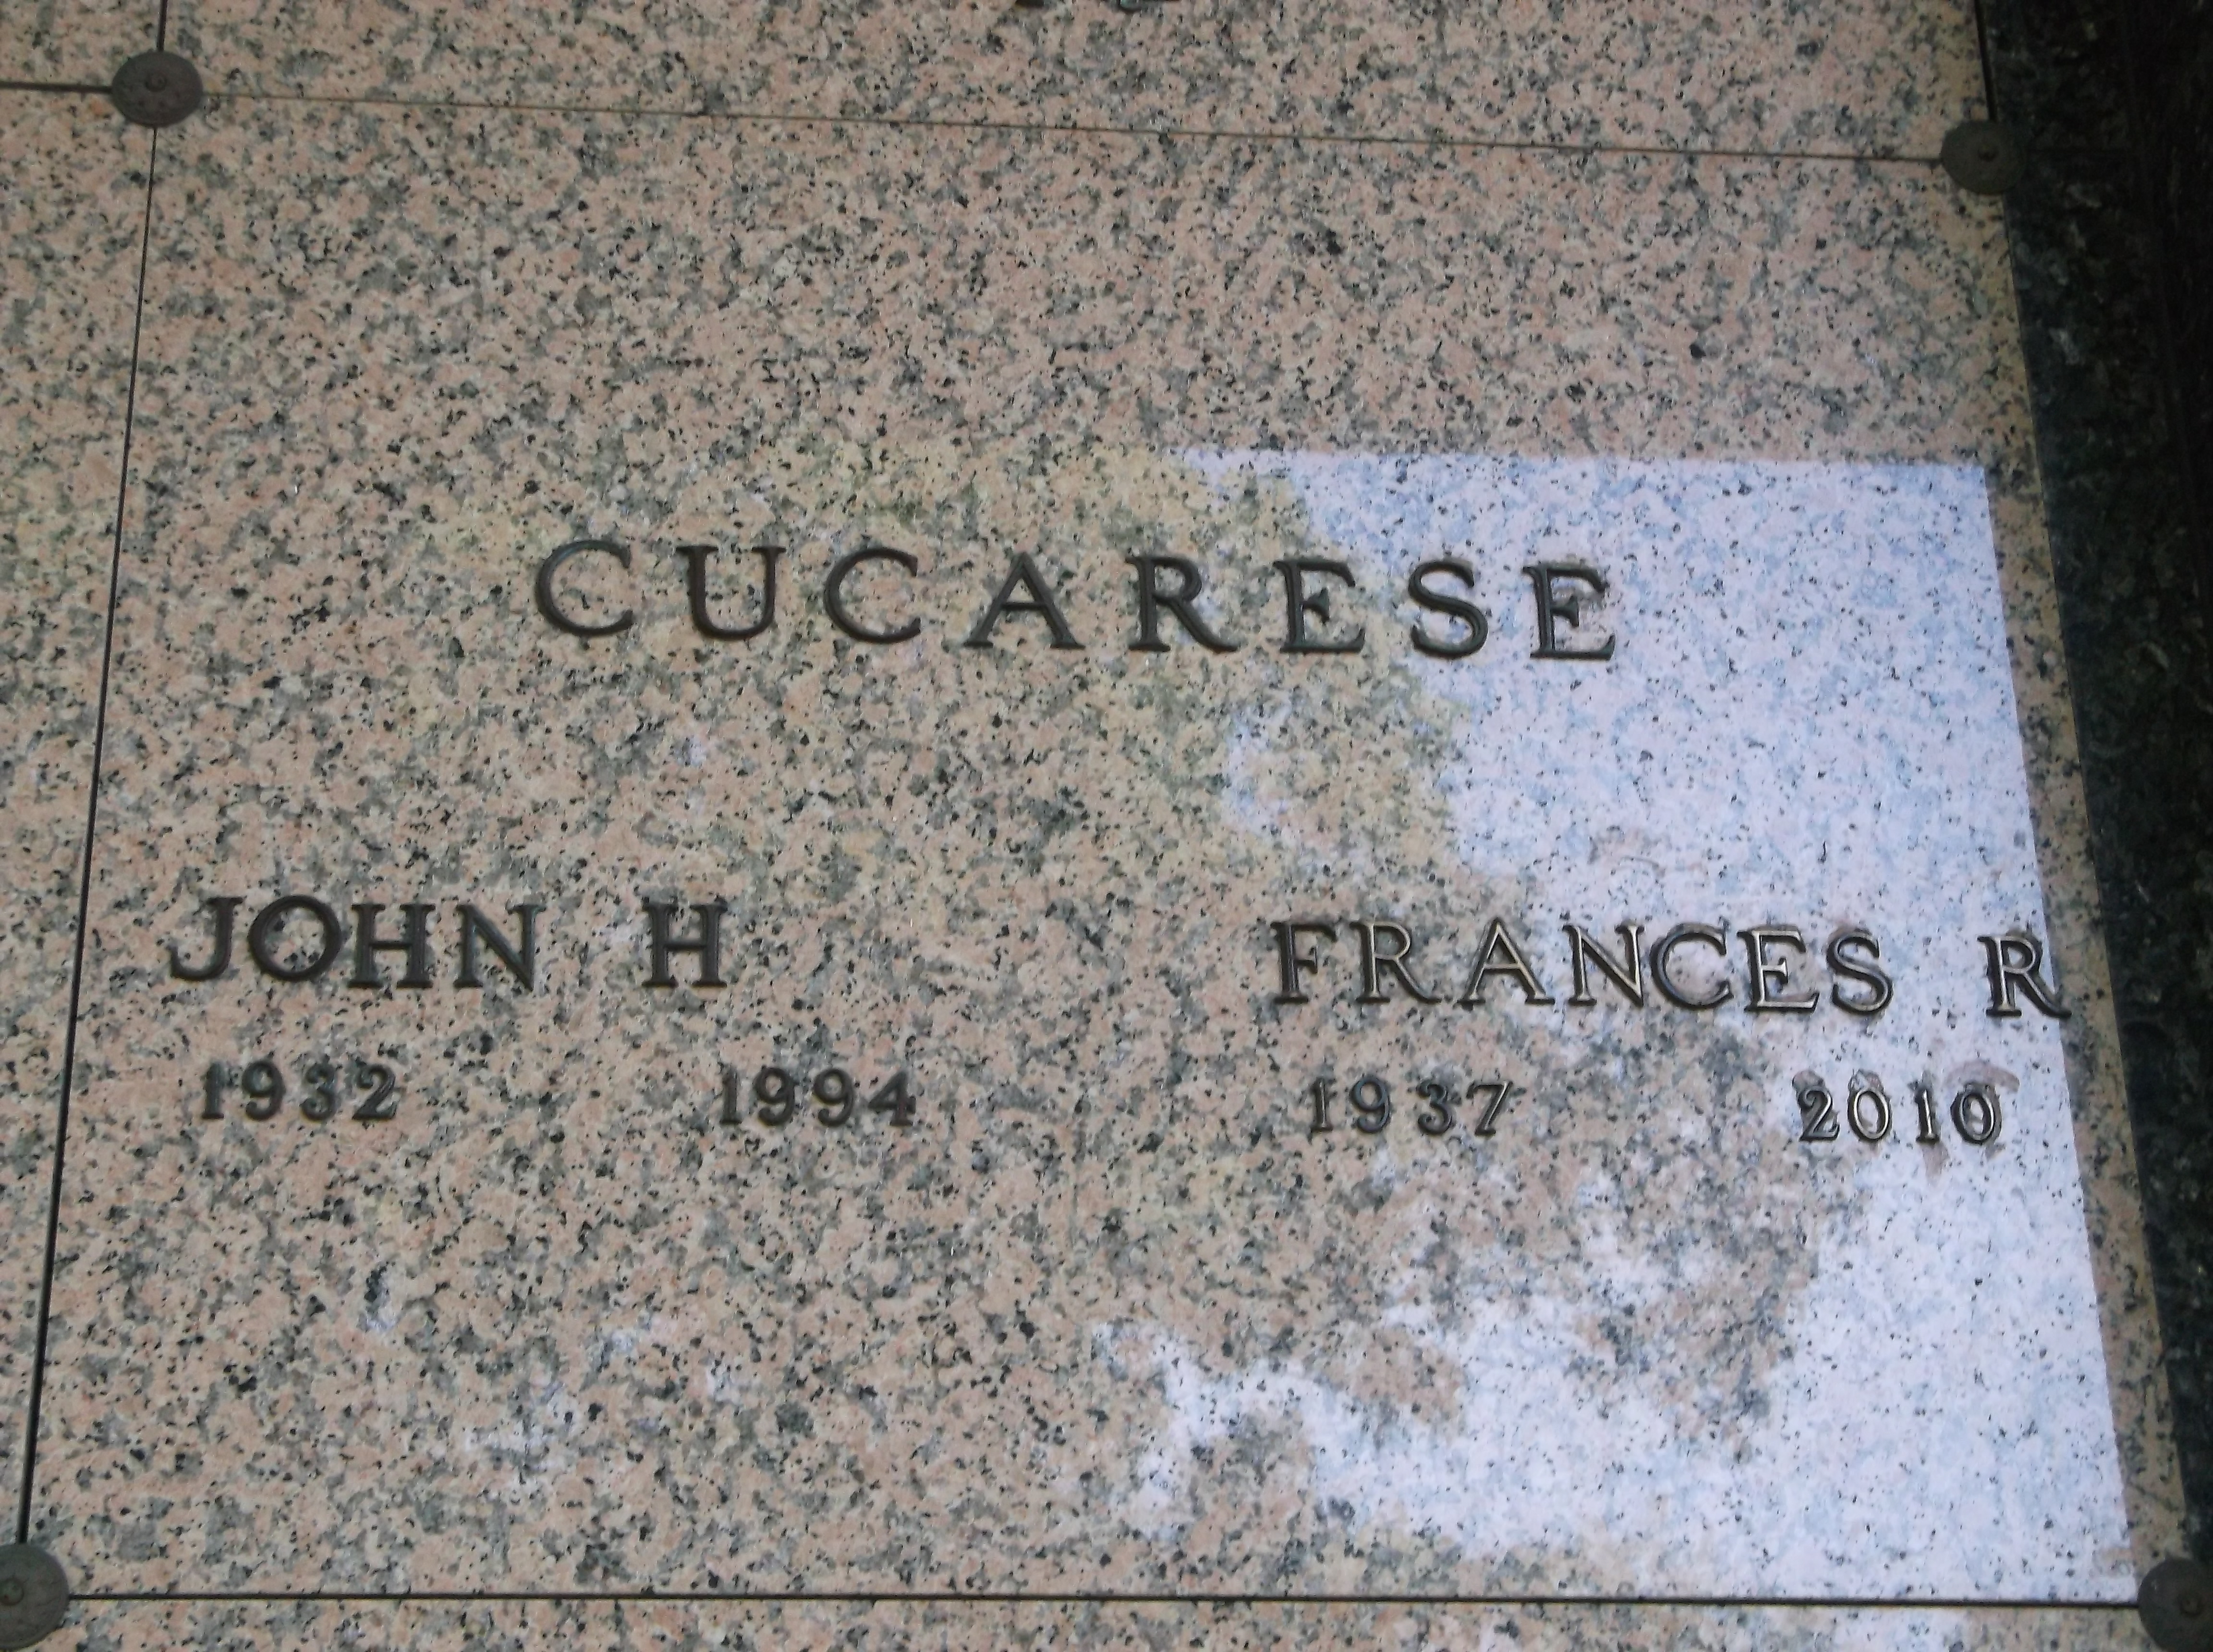 Frances R Cucarese